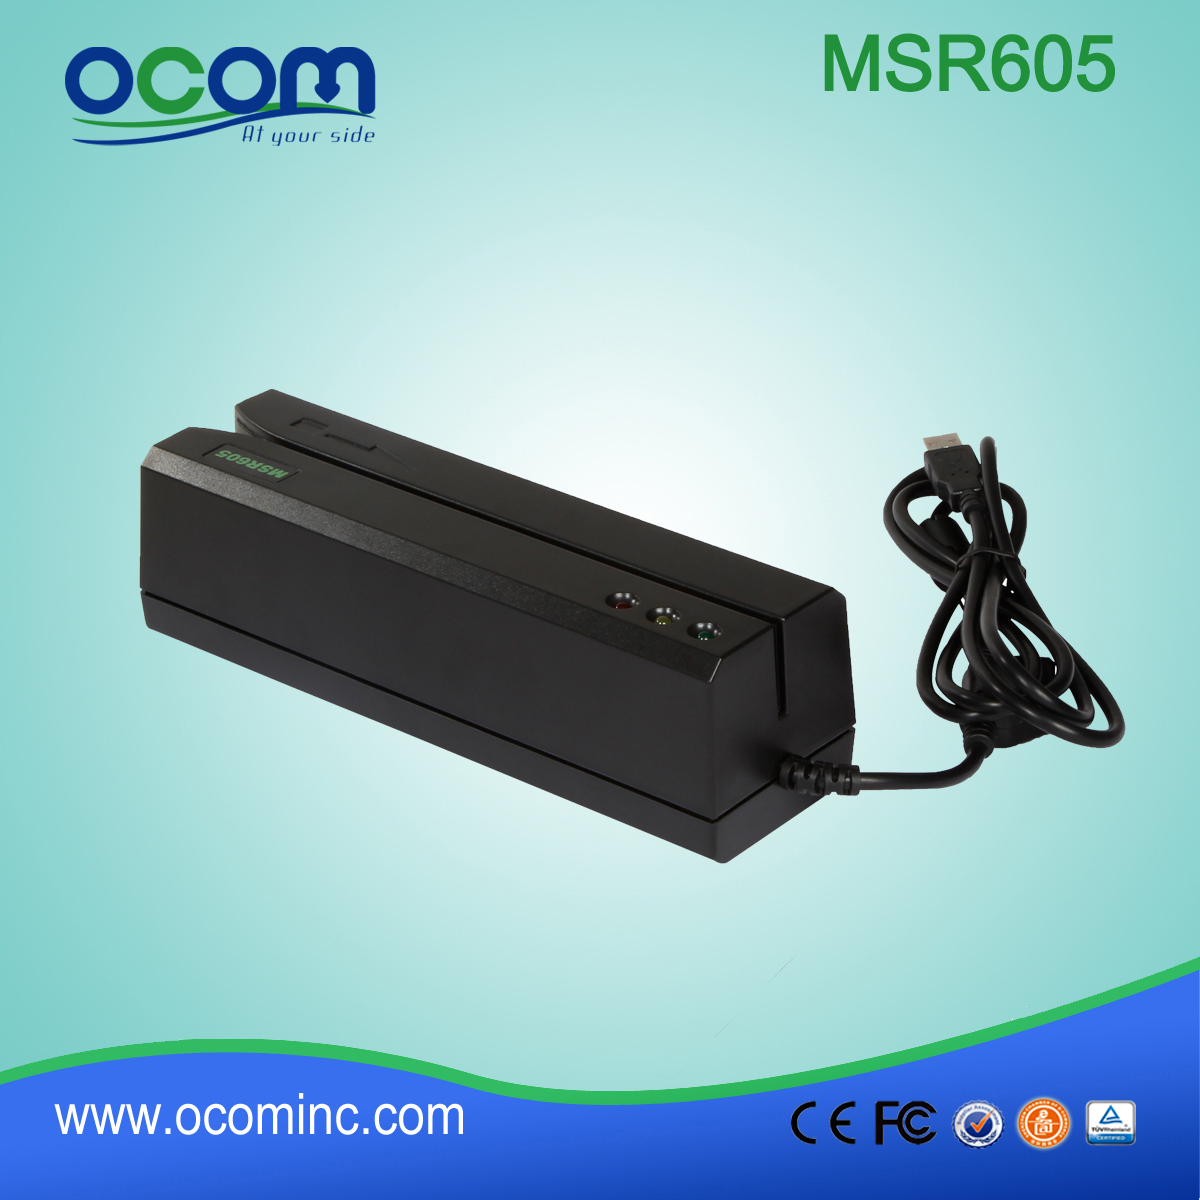 (MSR605) Китай сделал мини-кардридер и writter RS232, кард-ридер и USB writter